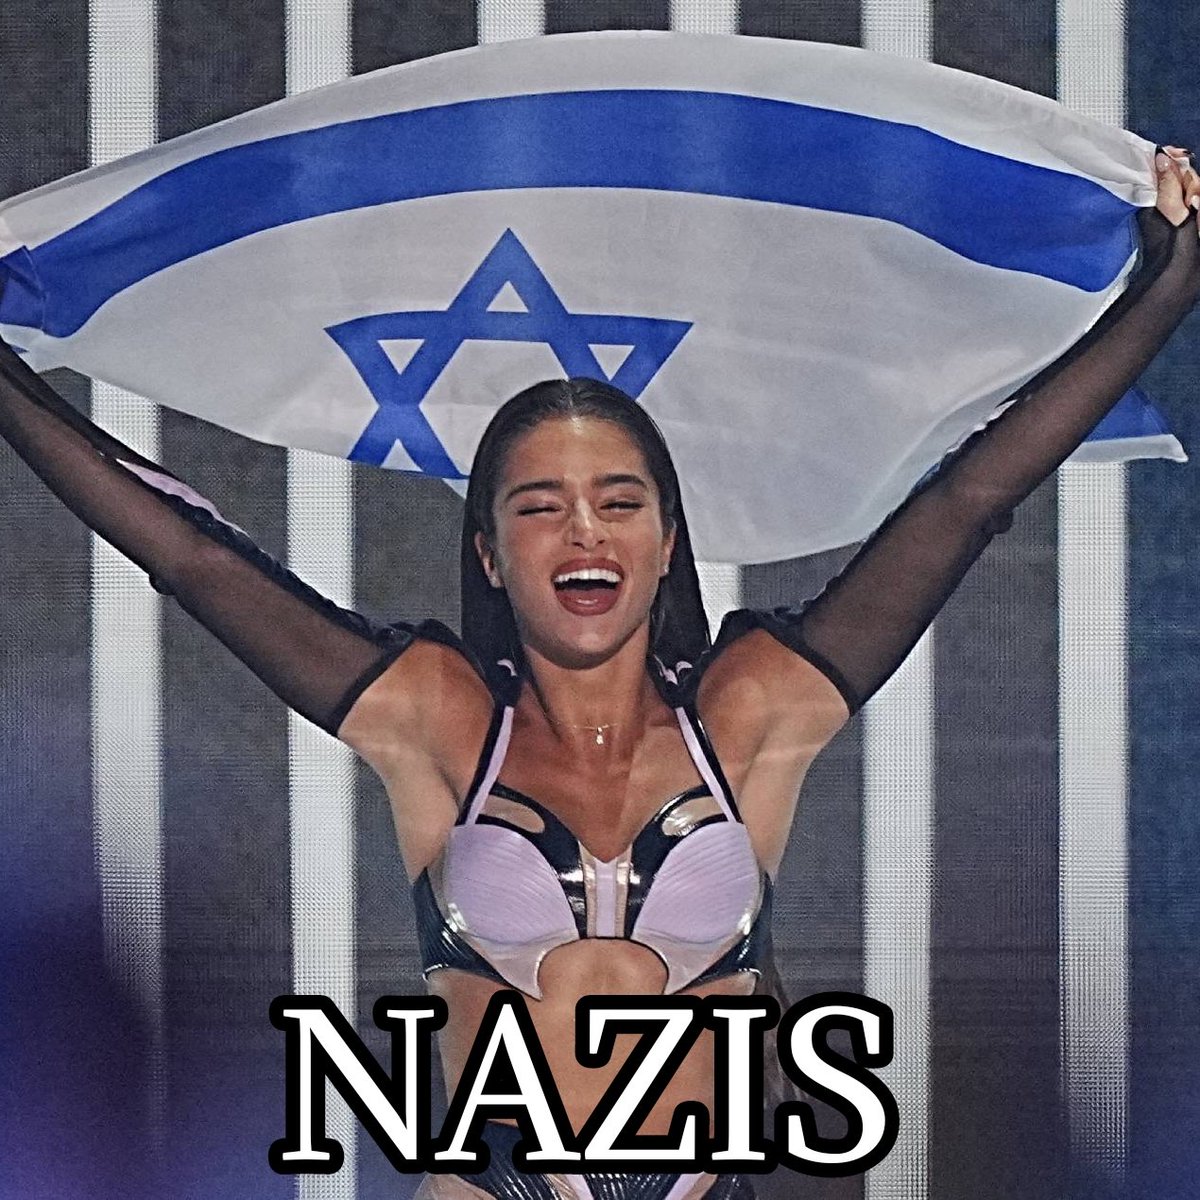 @IsraelinSpanish @Google @GoogleES son antisemitas. Vaya lo que se dice tradicionalmente nazis de m.